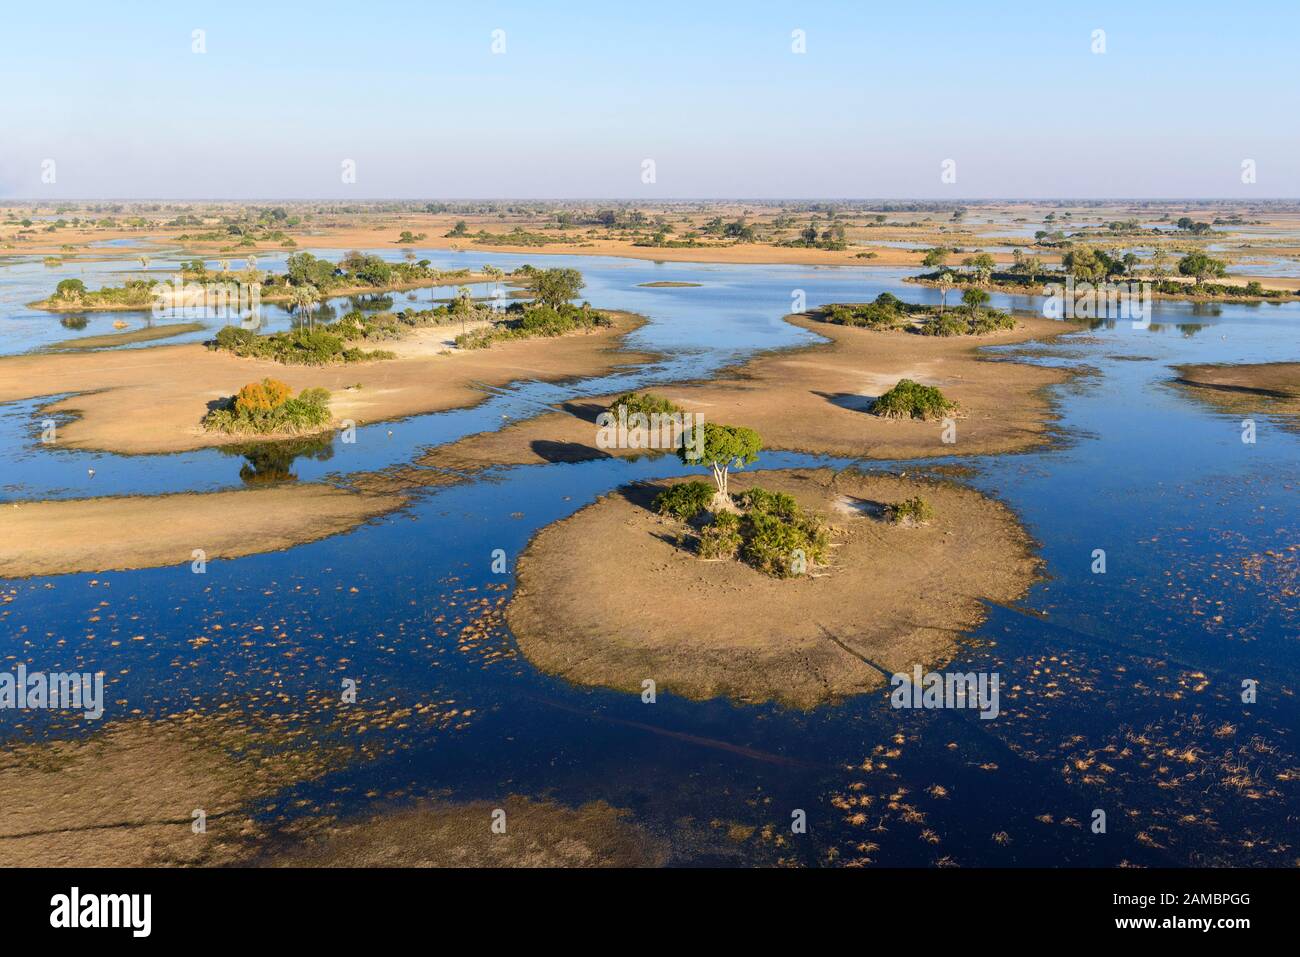 Vue aérienne du delta de l'Okavango au début de l'inondation annuelle, au Botswana Banque D'Images